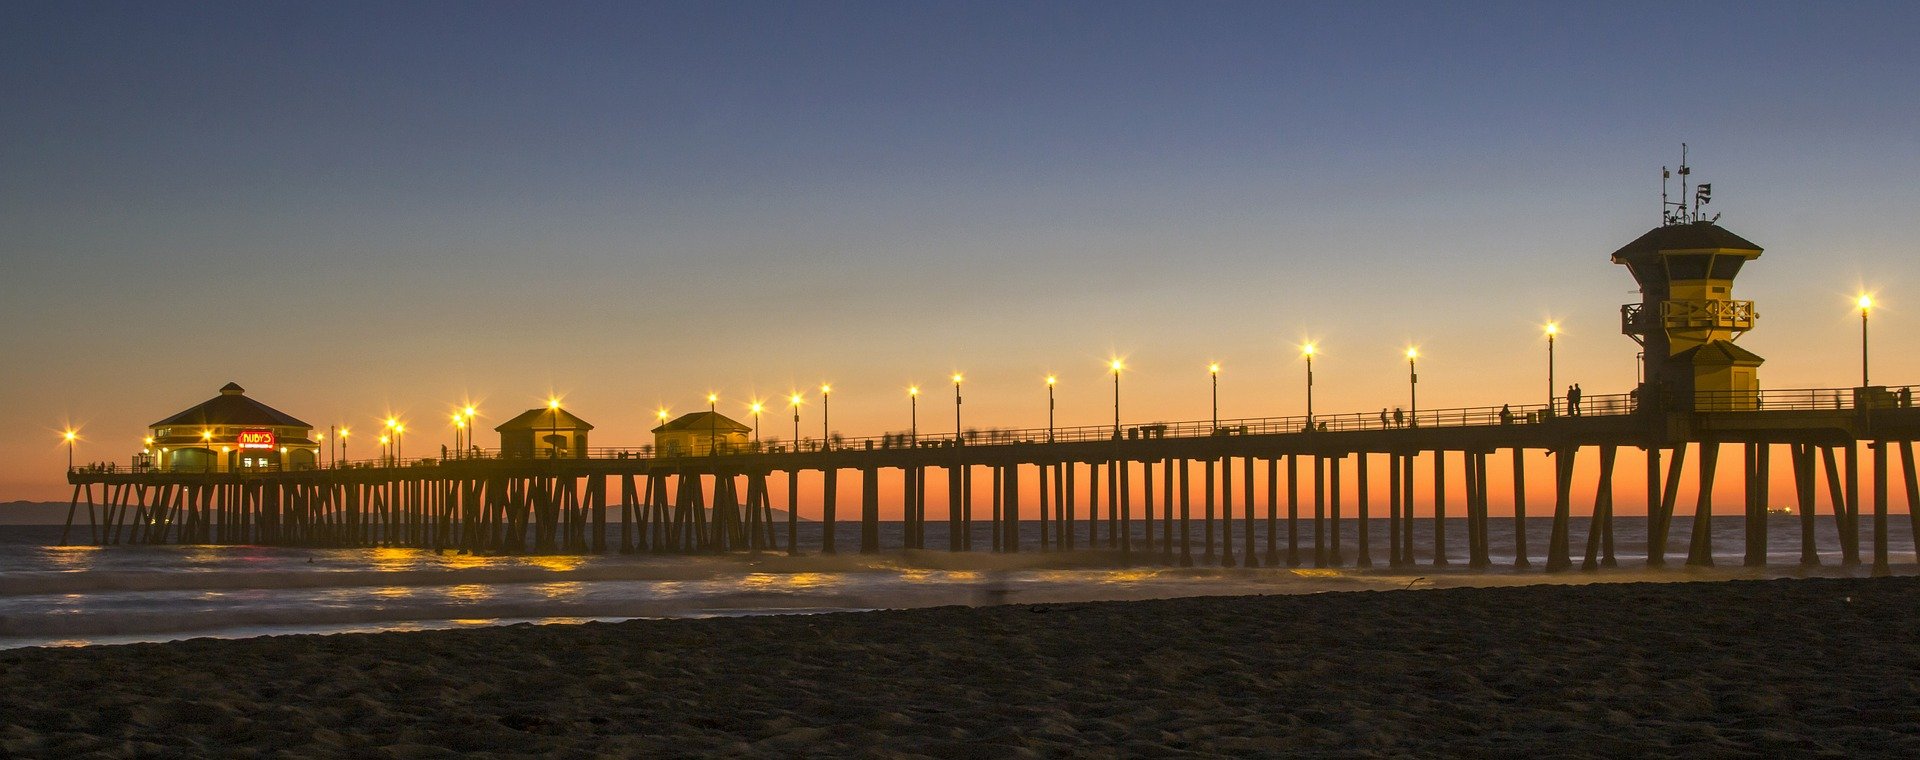 Sunset at Huntington Beach California - VeteranCarDonations.org